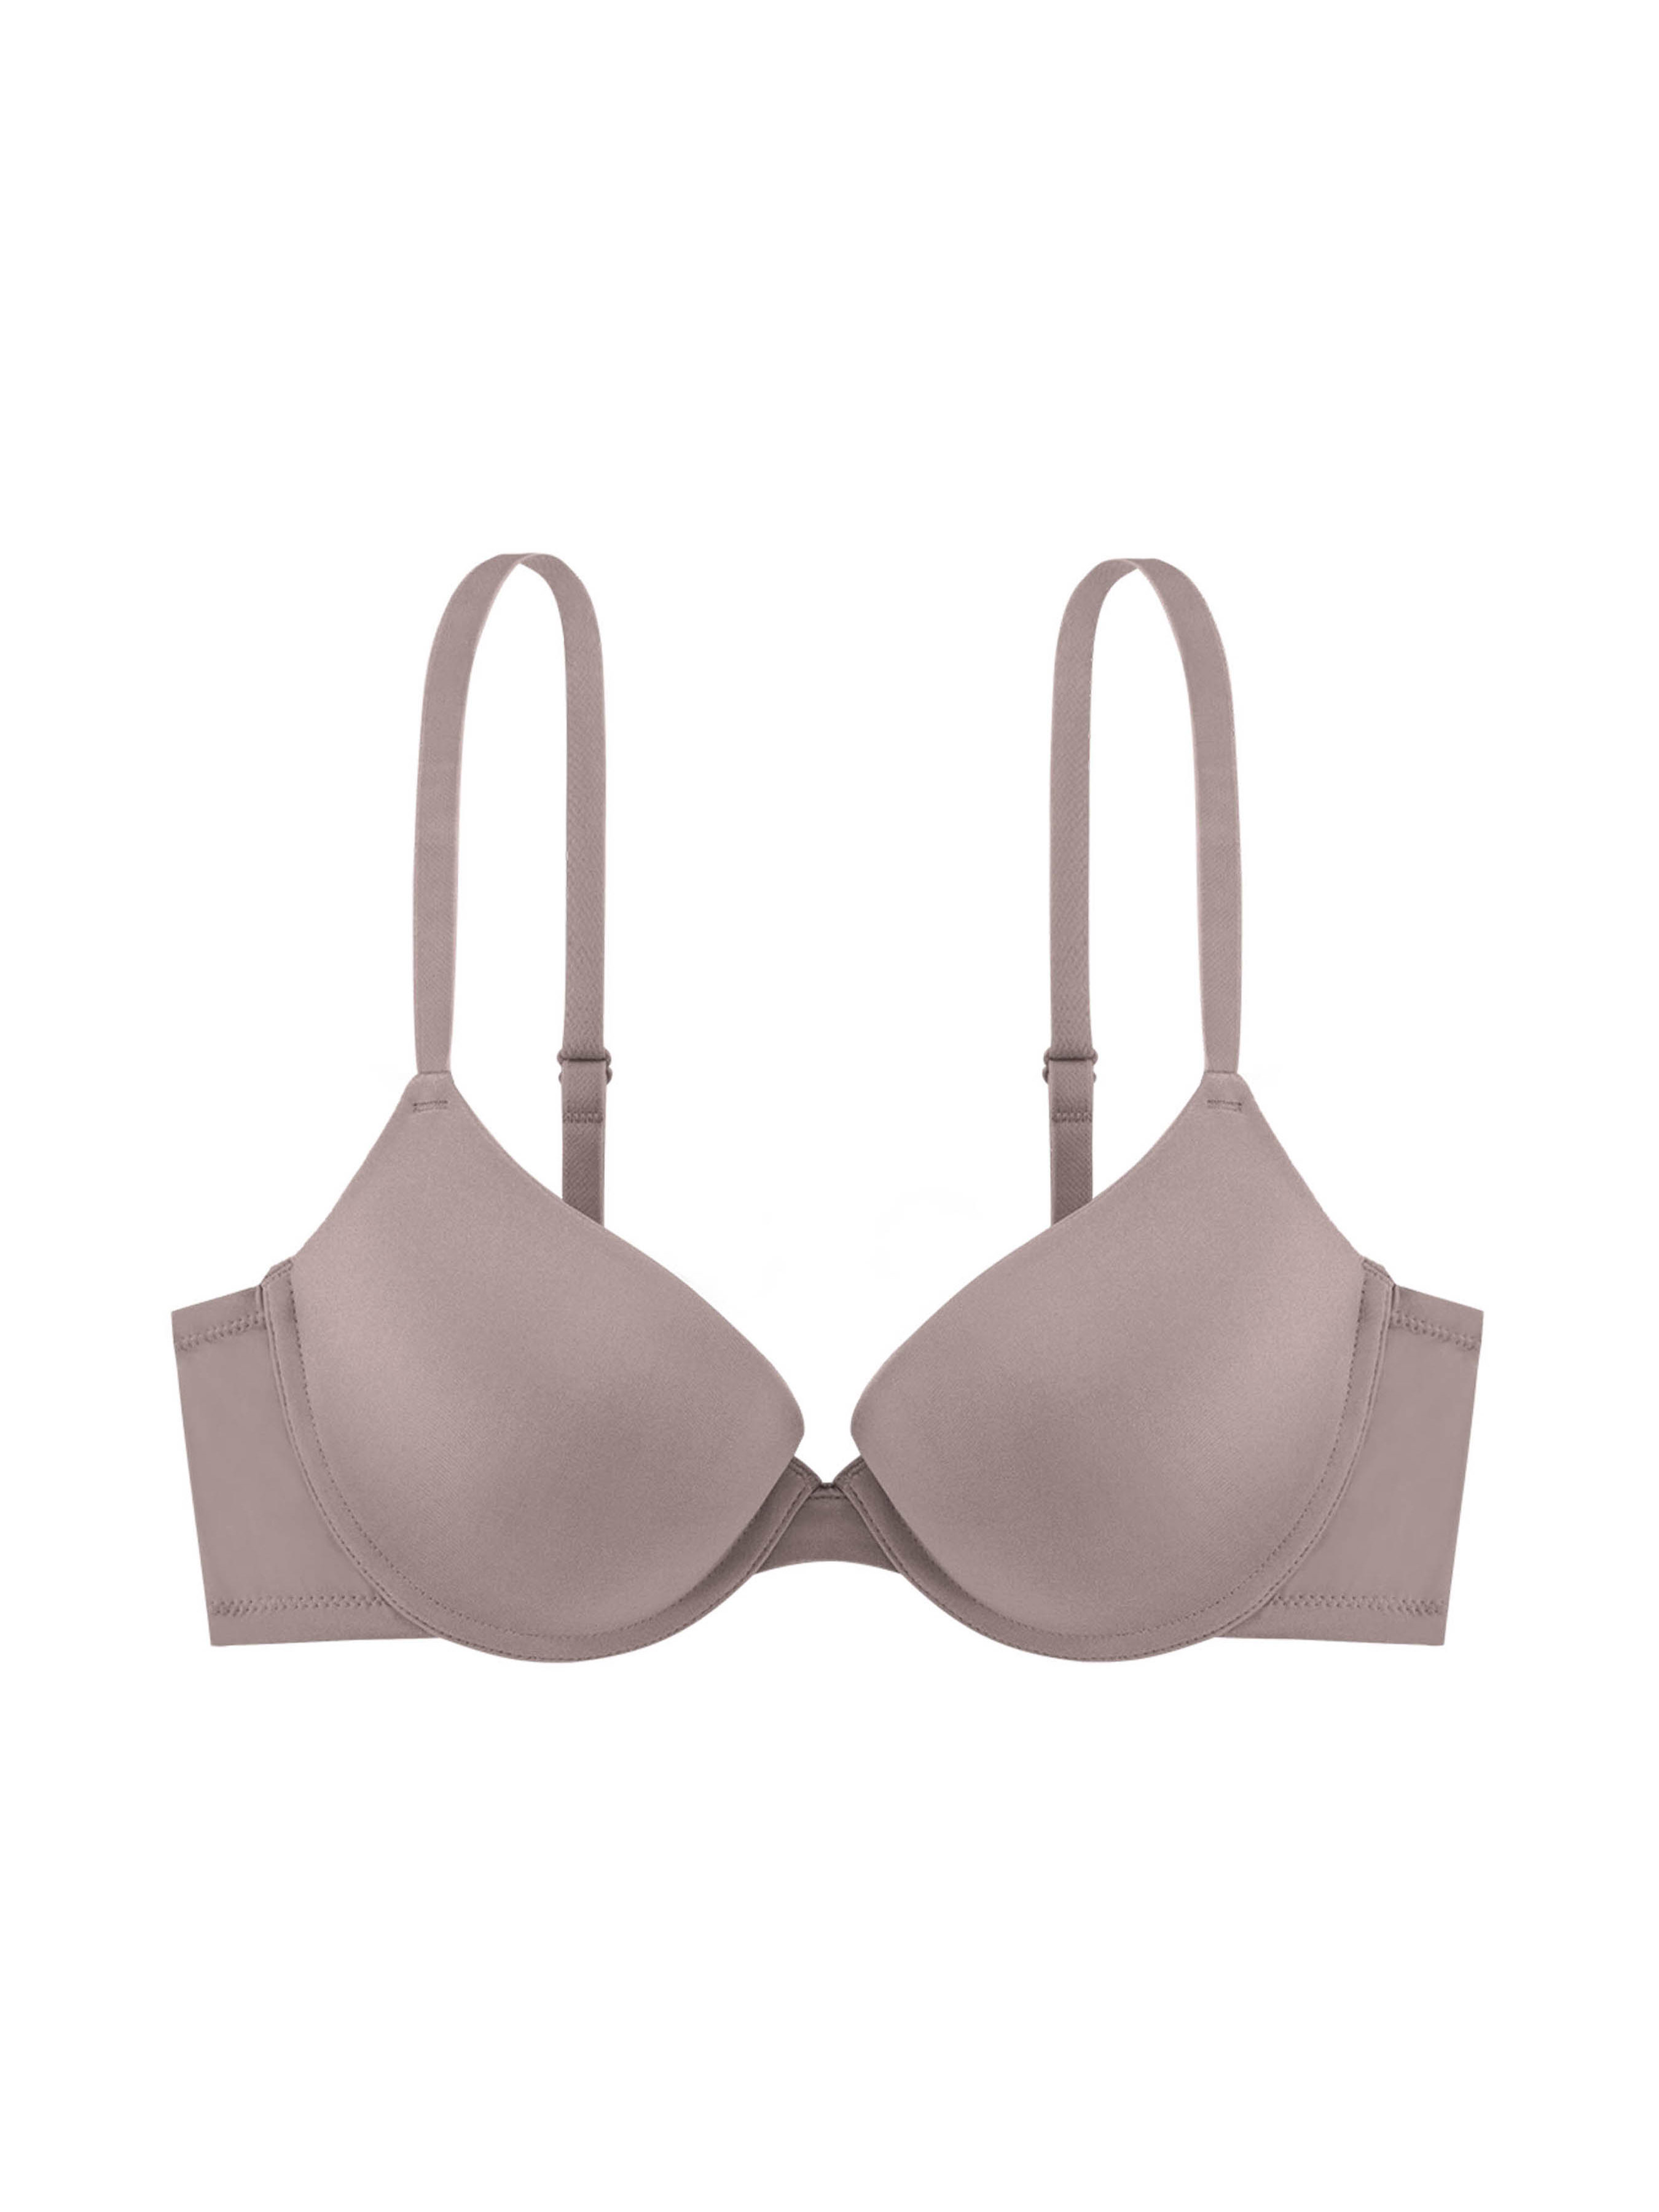 Push-up bra made of premium microfiber - Diane – Diane & Geordi US